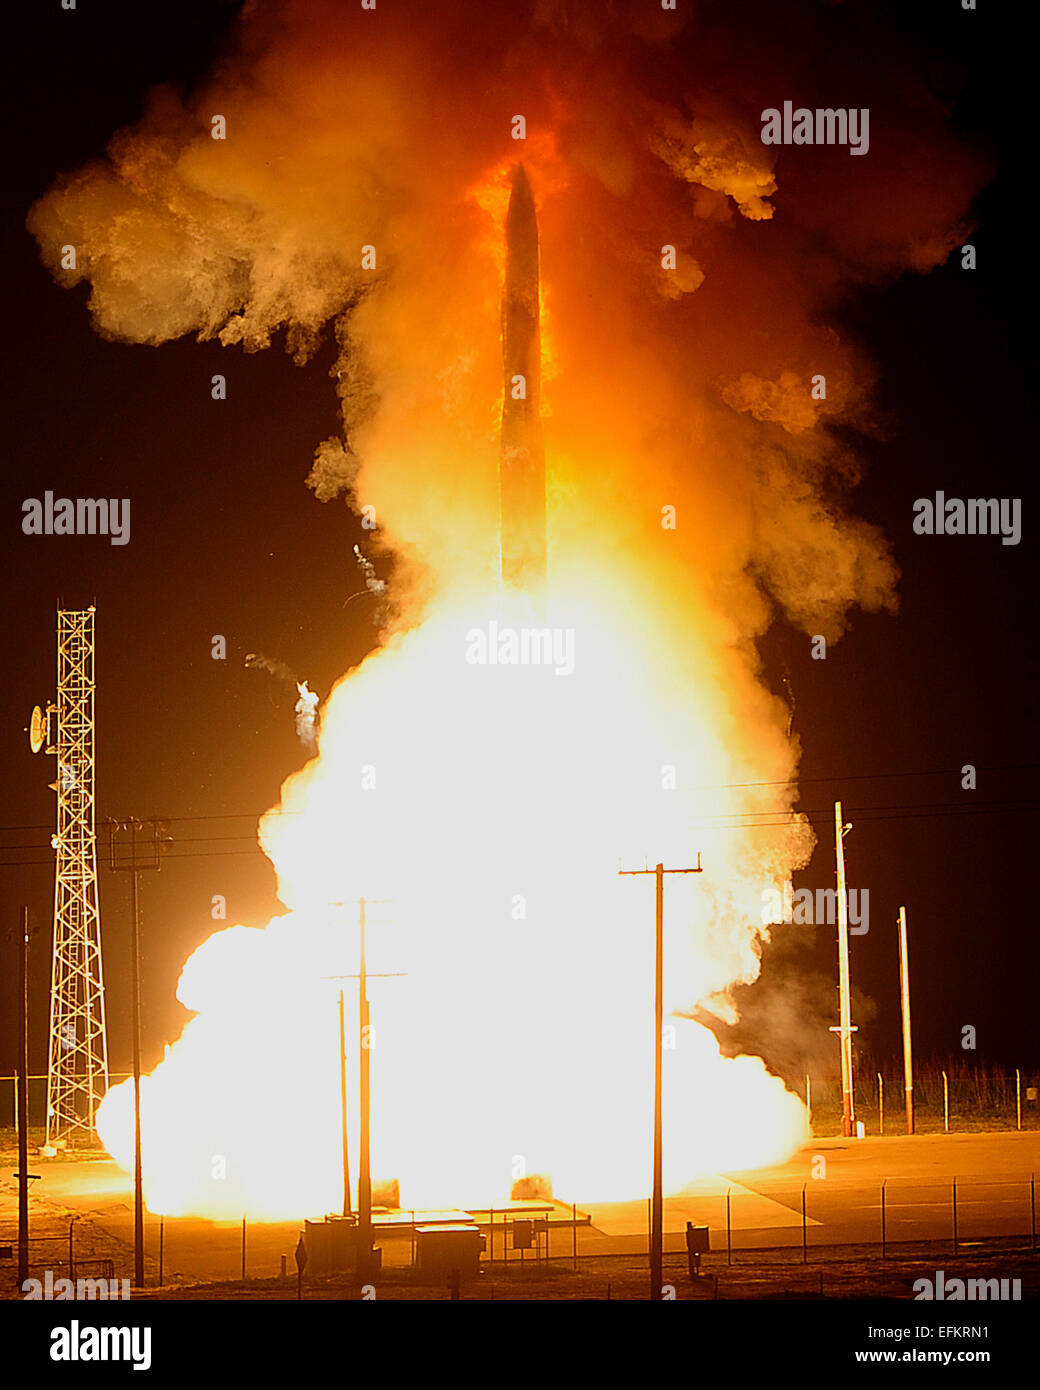 Una forza aerea disarmato LGM-30G Minuteman III intercontinental ballistic missile nucleare è lanciato nel corso di una prova di funzionamento alla base aerea di Vandenberg Febbraio 25, 2013 in Vandenberg, California. Foto Stock